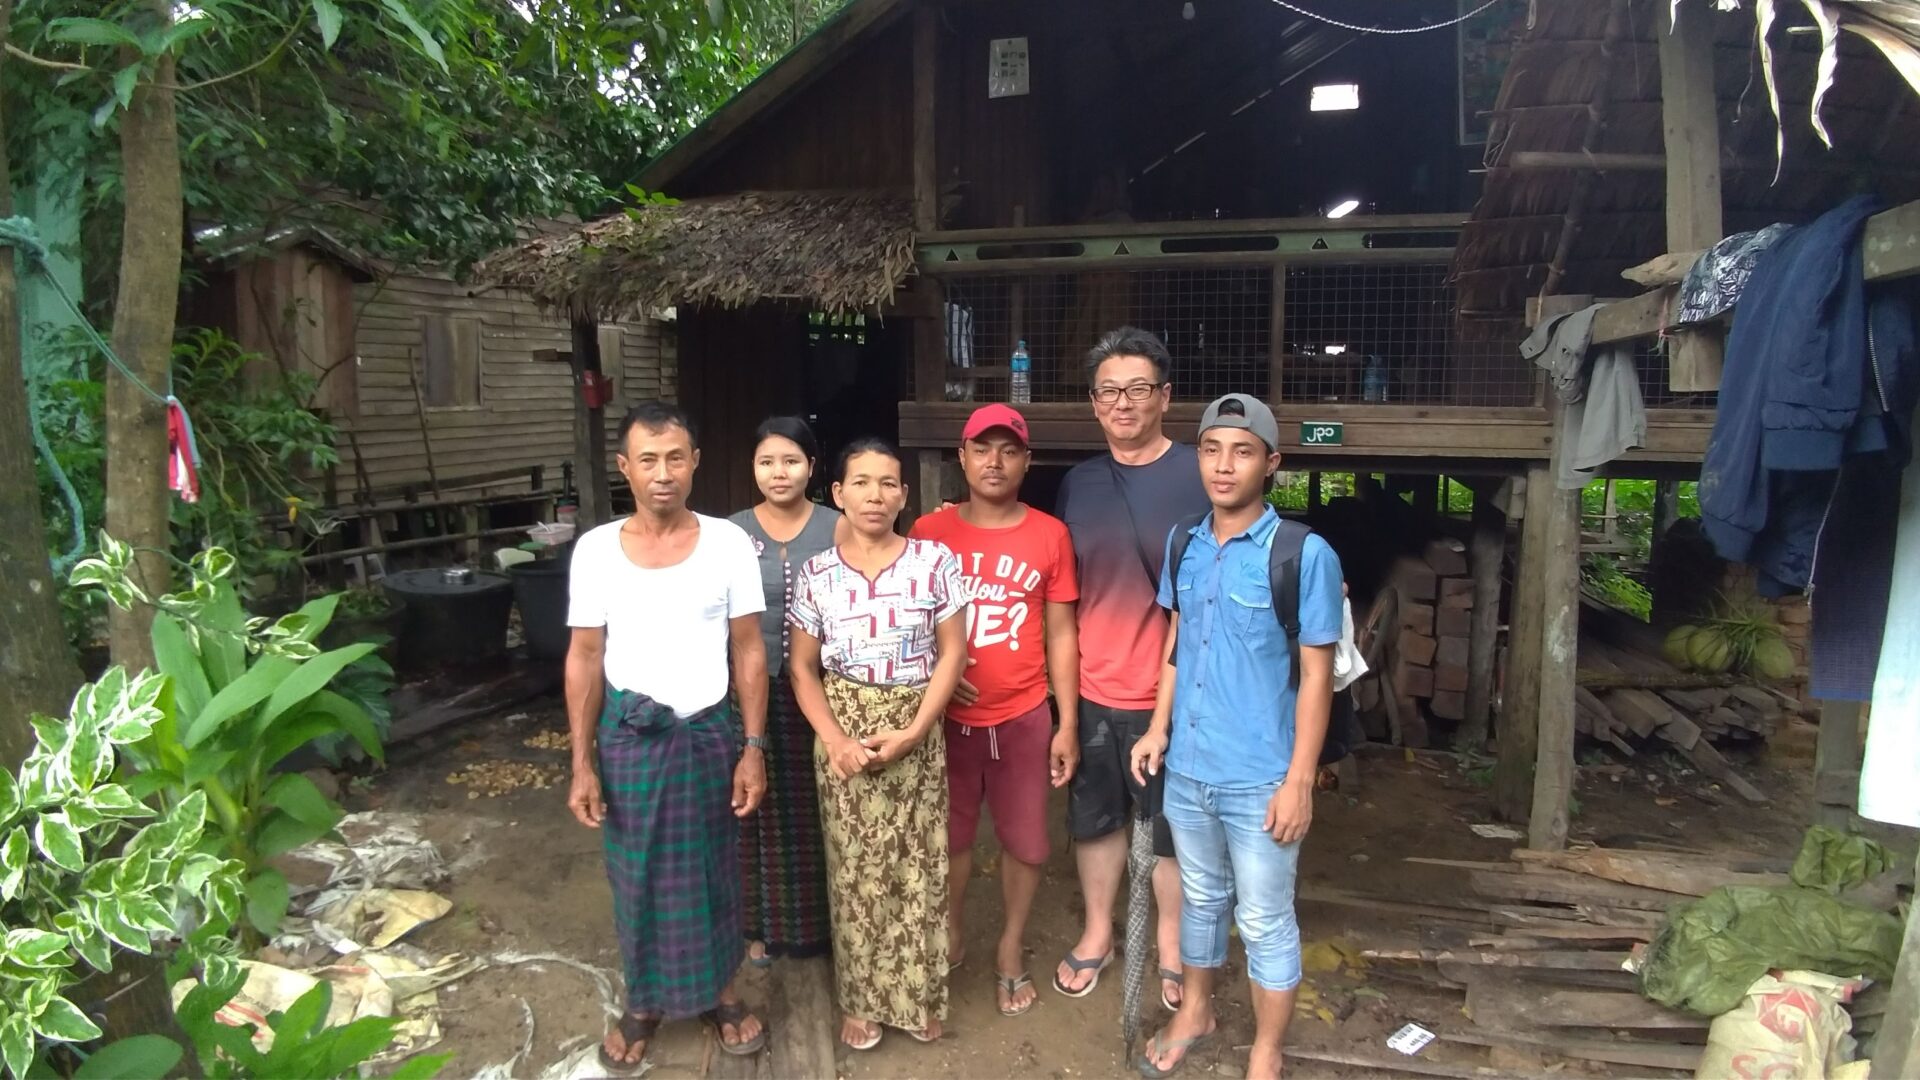 ミャンマー人技能実習生パテインまで家庭訪問